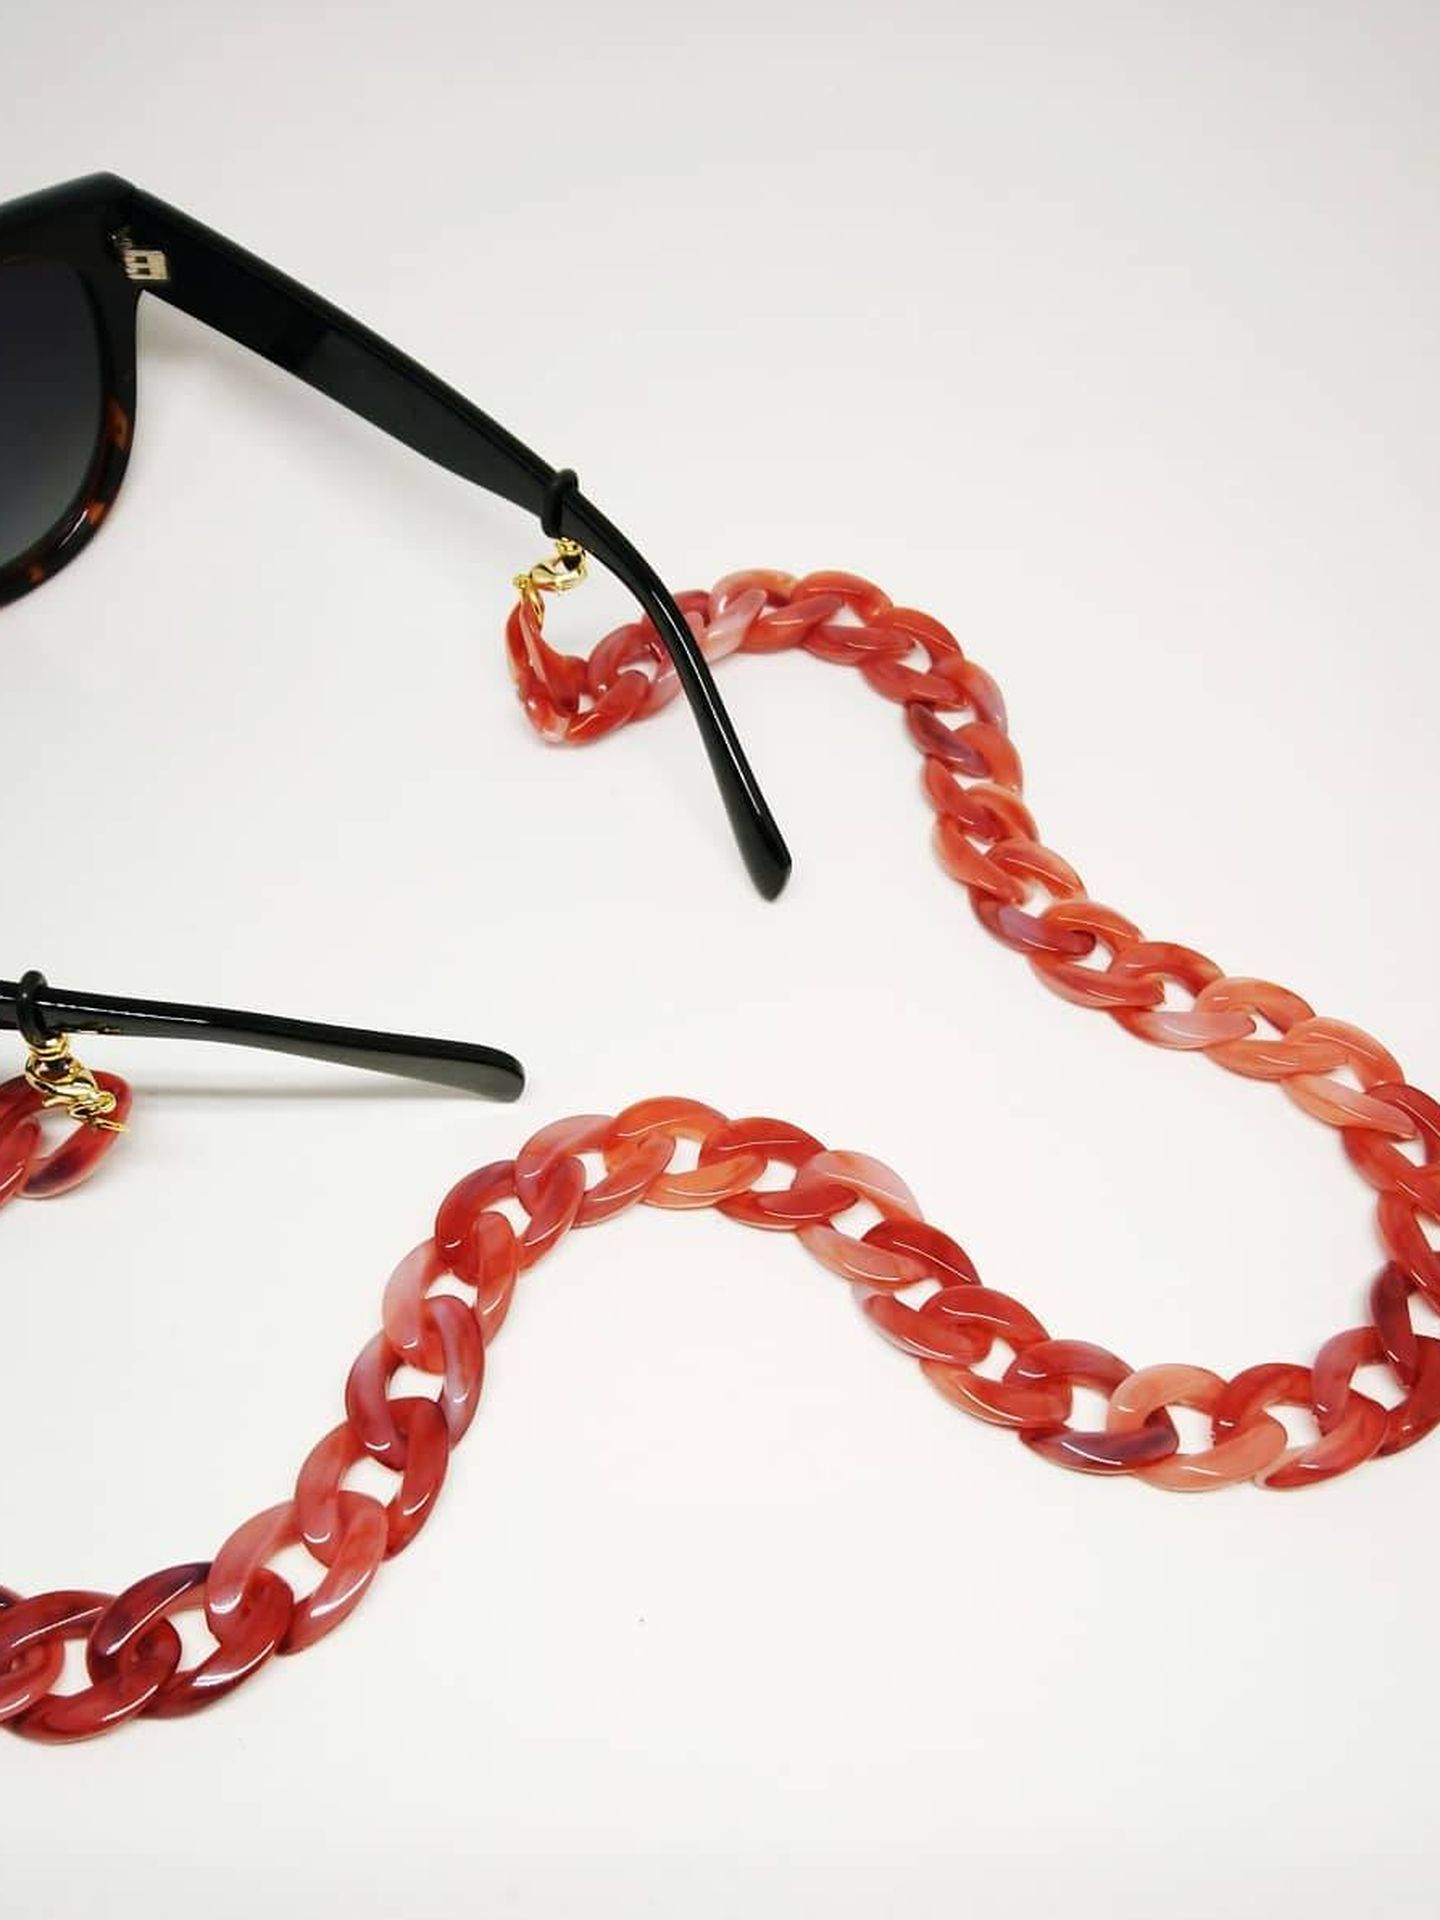 Pon el toque trendy a tu look playero con una de esas cadenas para gafas.  (Cortesía)